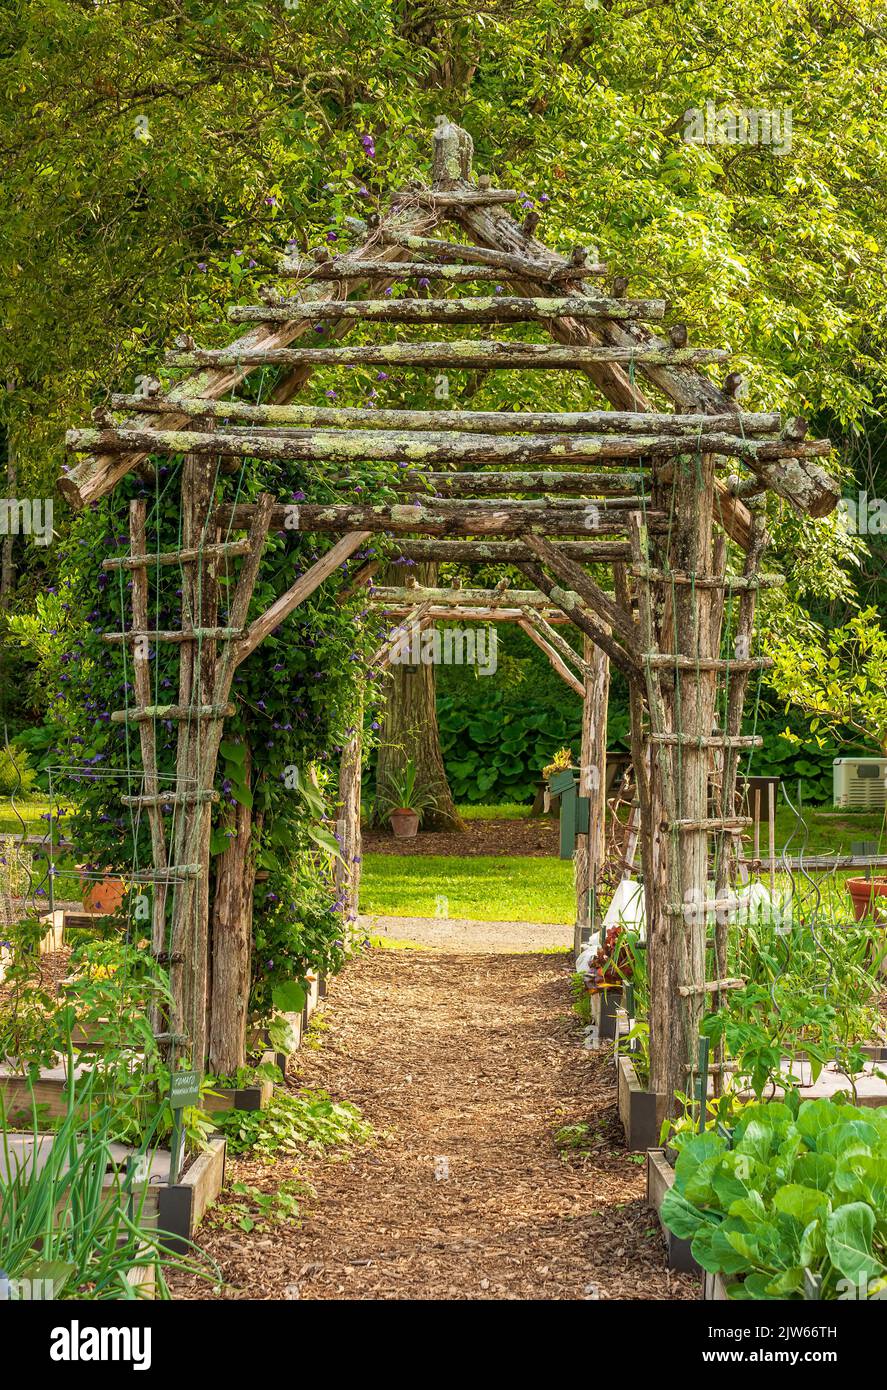 Ein rustikaler Pavillon Spalier aus Ästen, auf einem Weg durch einen Gemüsegarten. Berkshire Botanical Garden, Stockbridge, MA Stockfoto